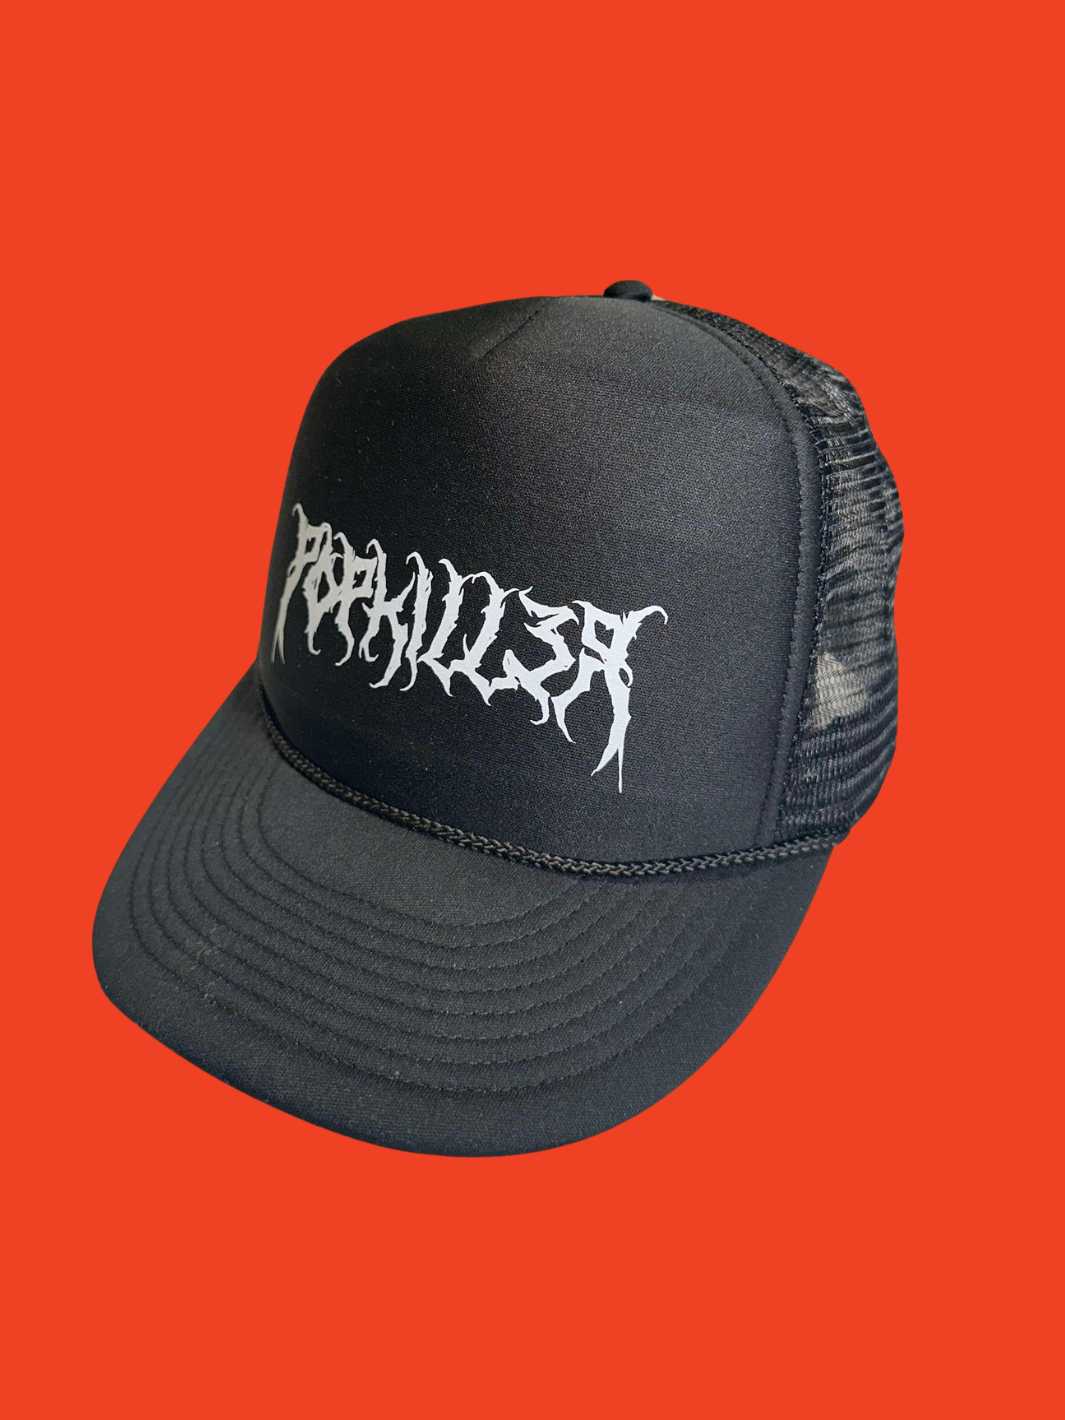 Popkiller Death Metal Mesh Hat